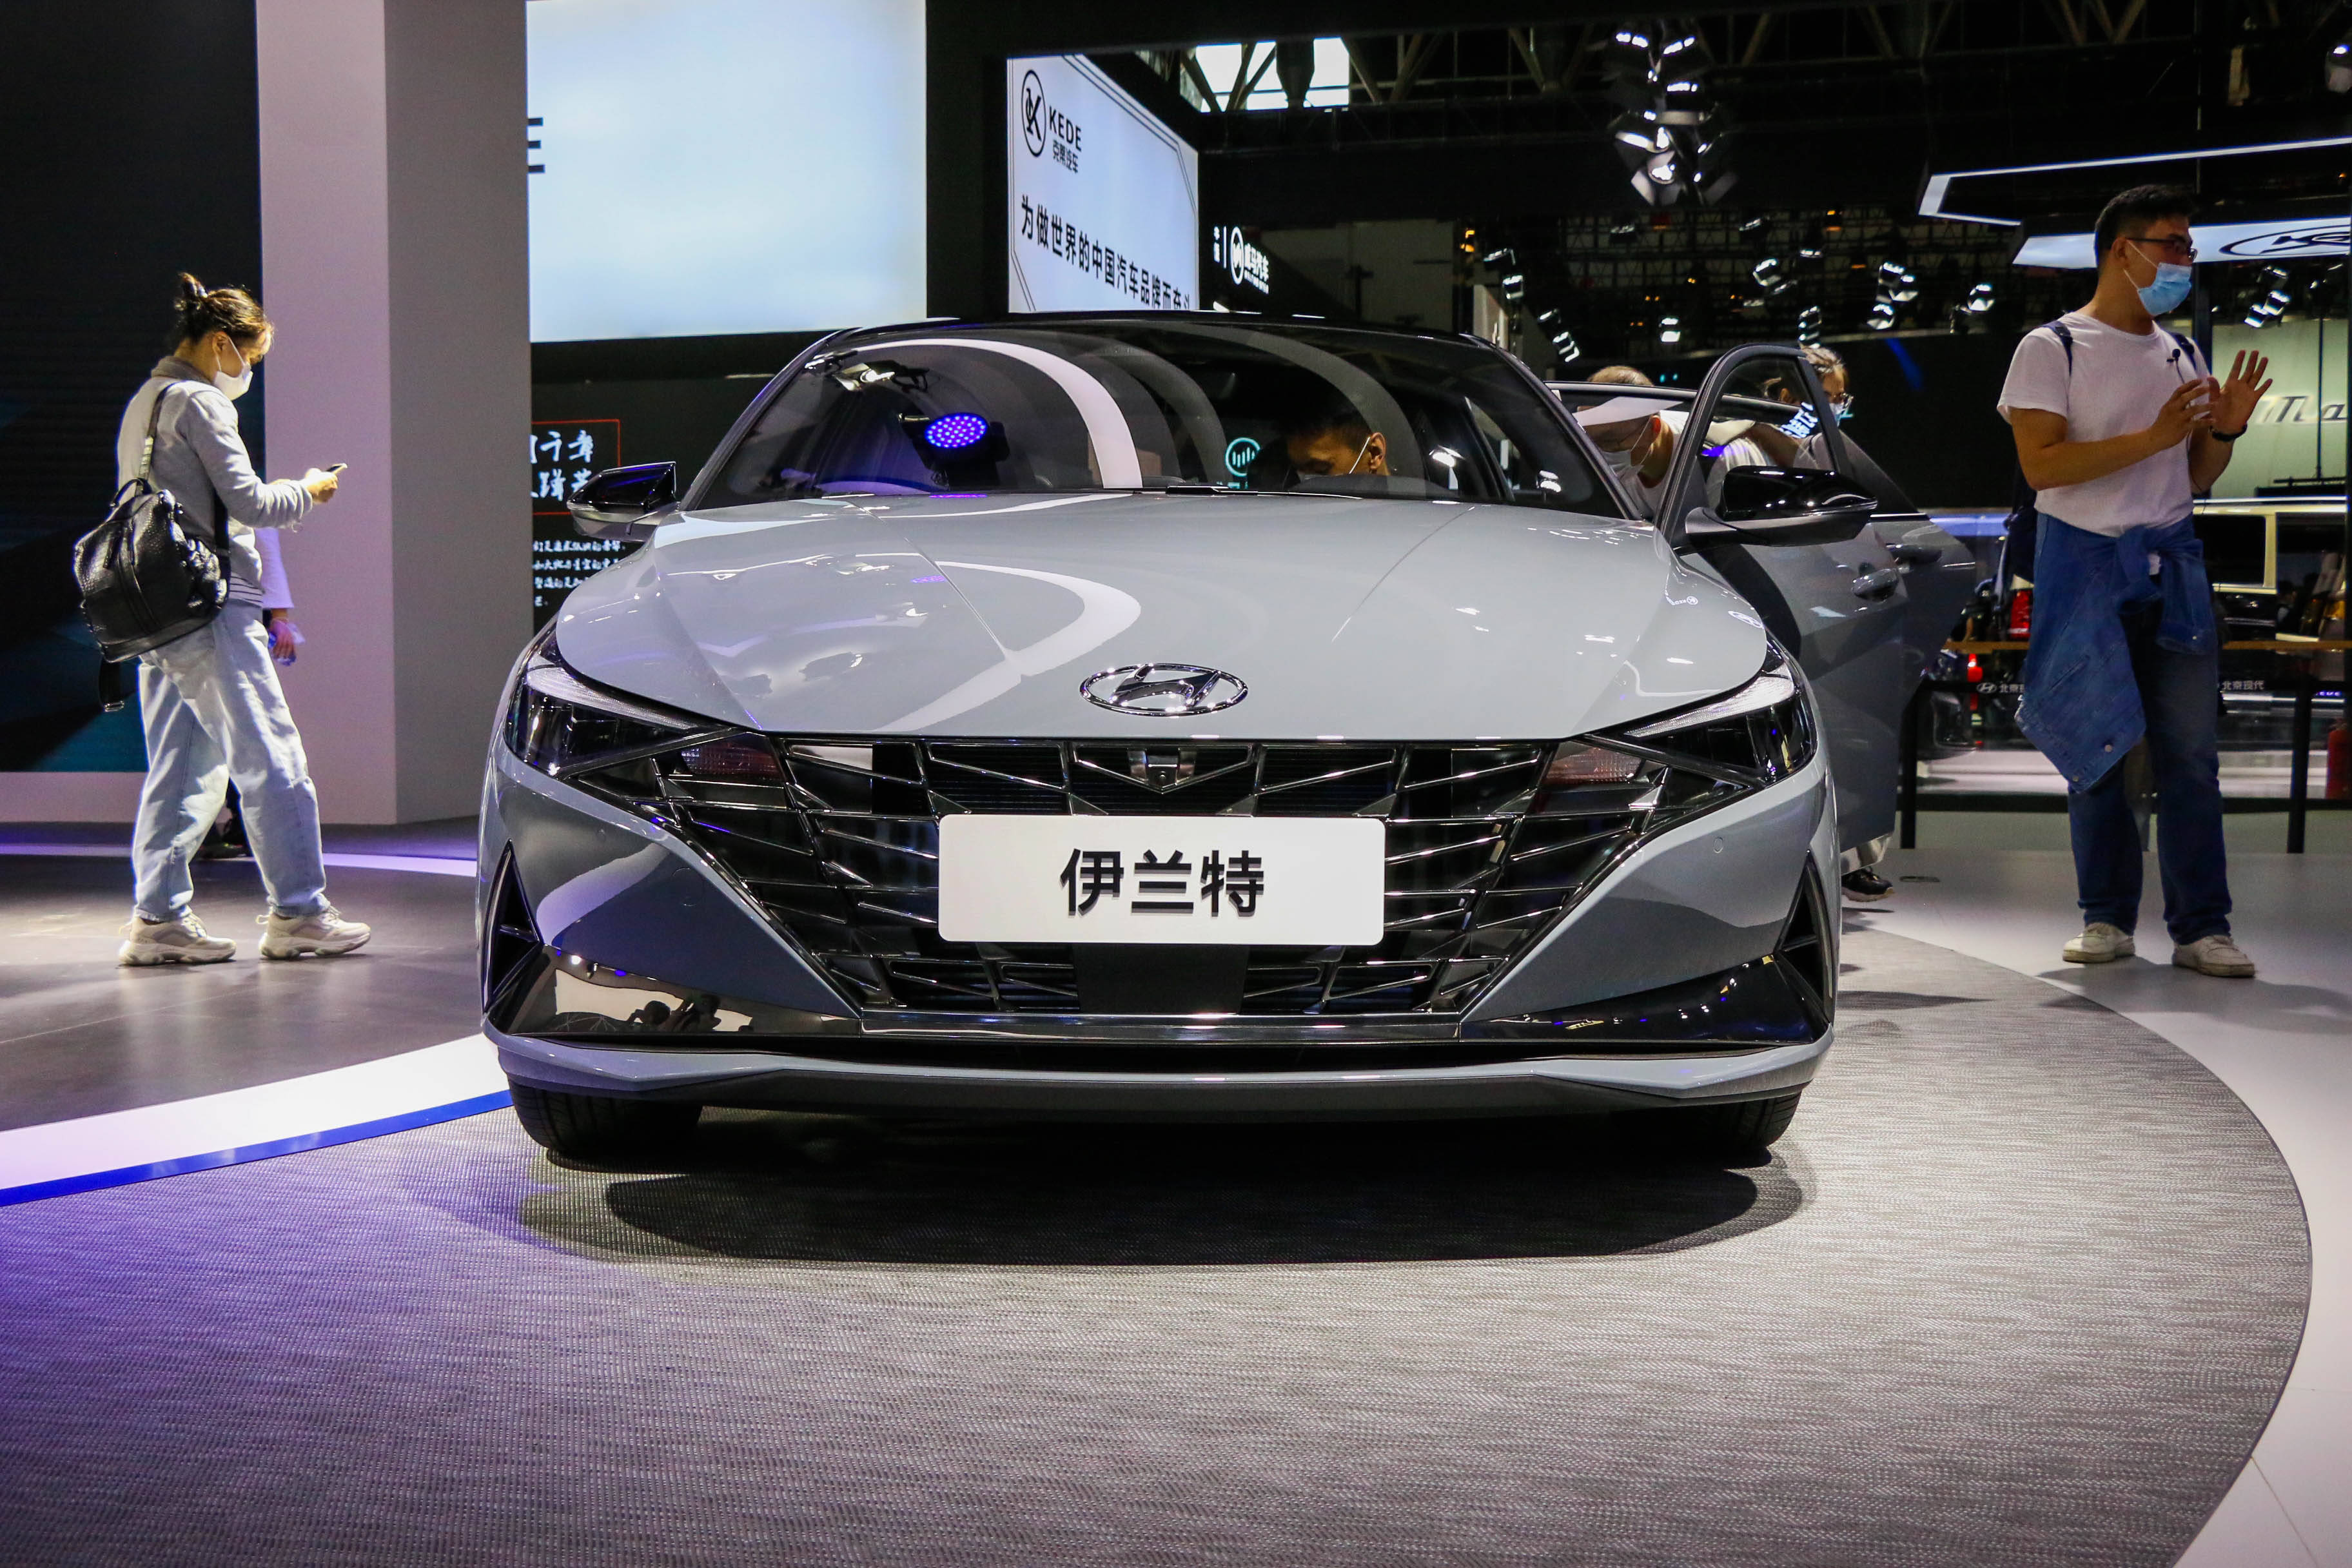 2020北京车展丨设计今非昔比,吹响反攻号角 北京现代伊兰特车展实拍